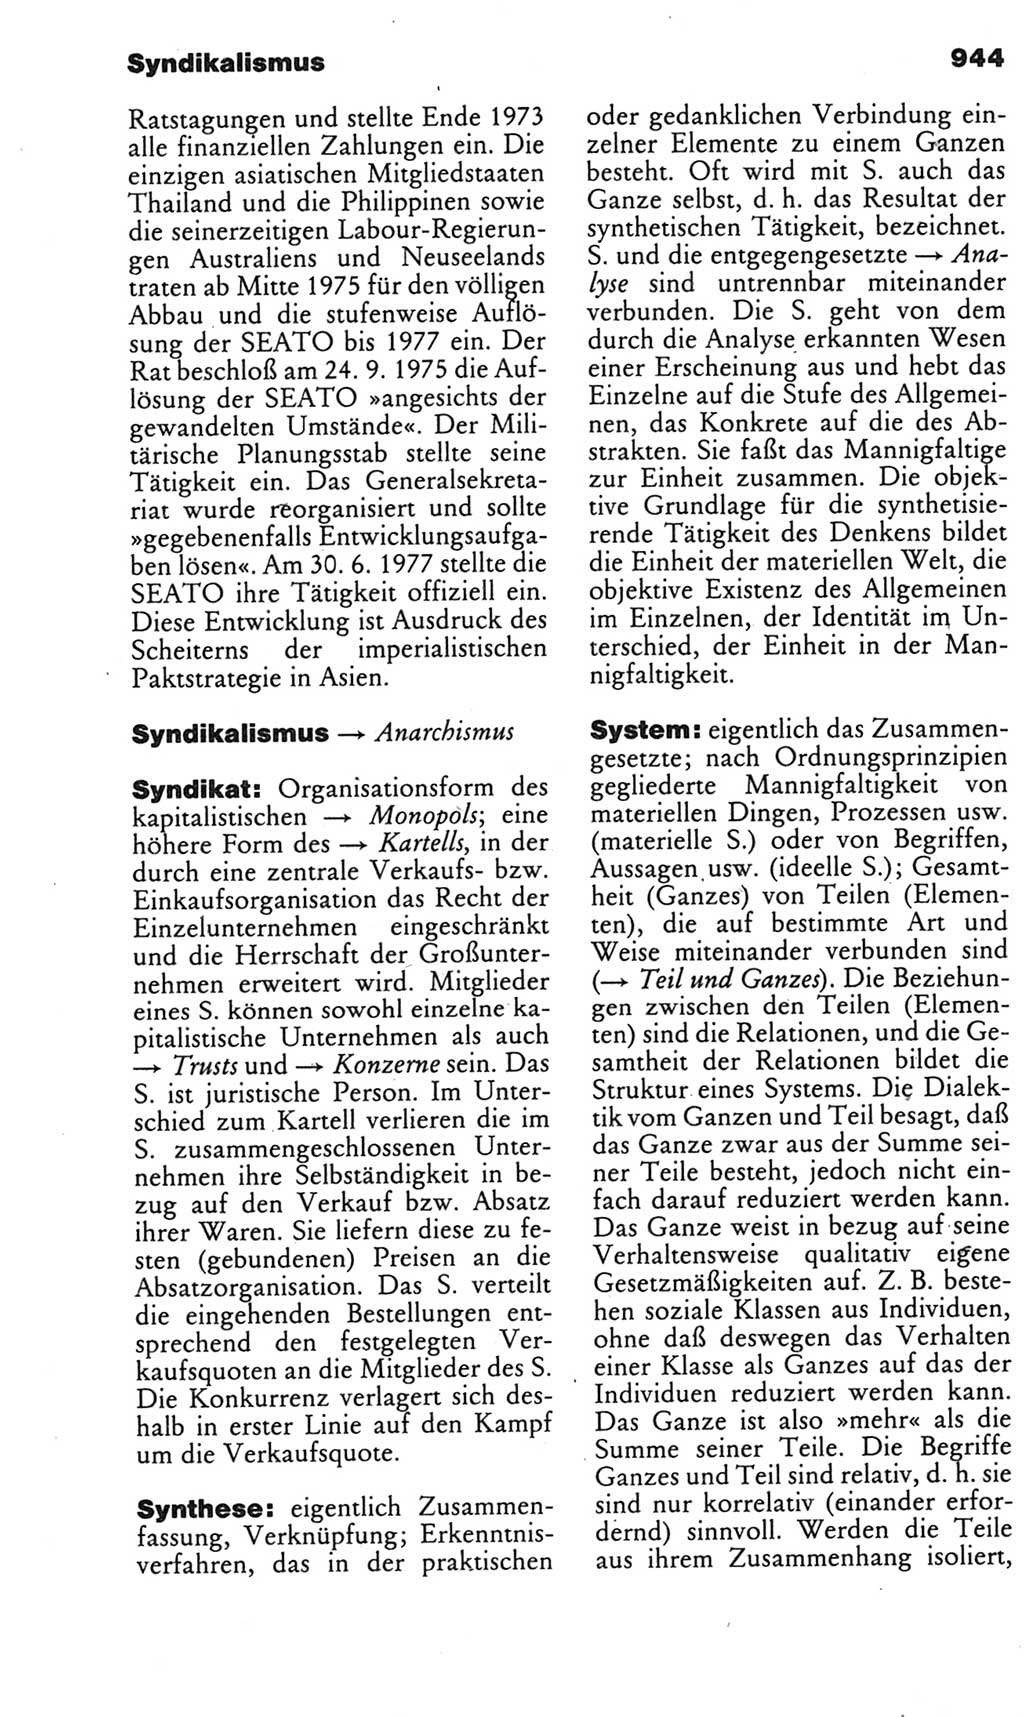 Kleines politisches Wörterbuch [Deutsche Demokratische Republik (DDR)] 1985, Seite 944 (Kl. pol. Wb. DDR 1985, S. 944)